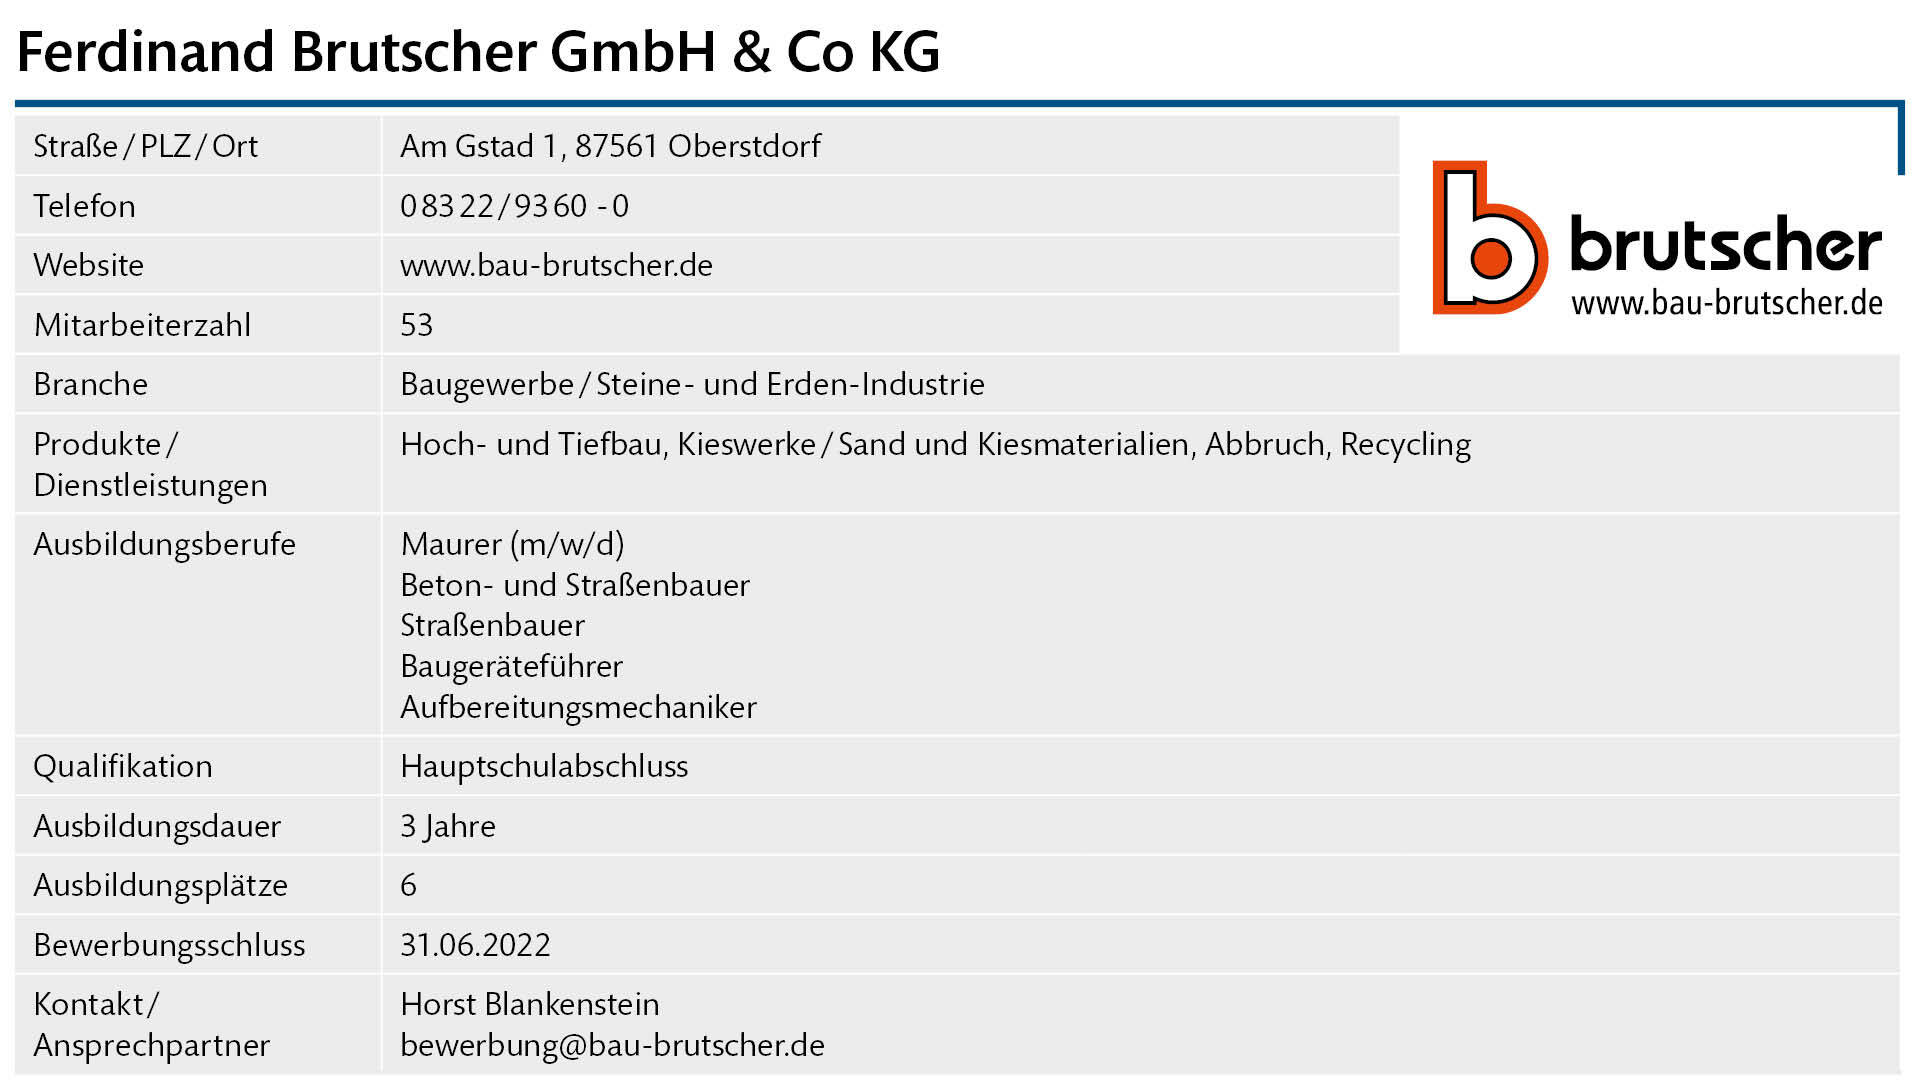 Steckbrief Brutscher GmbH & Co KG